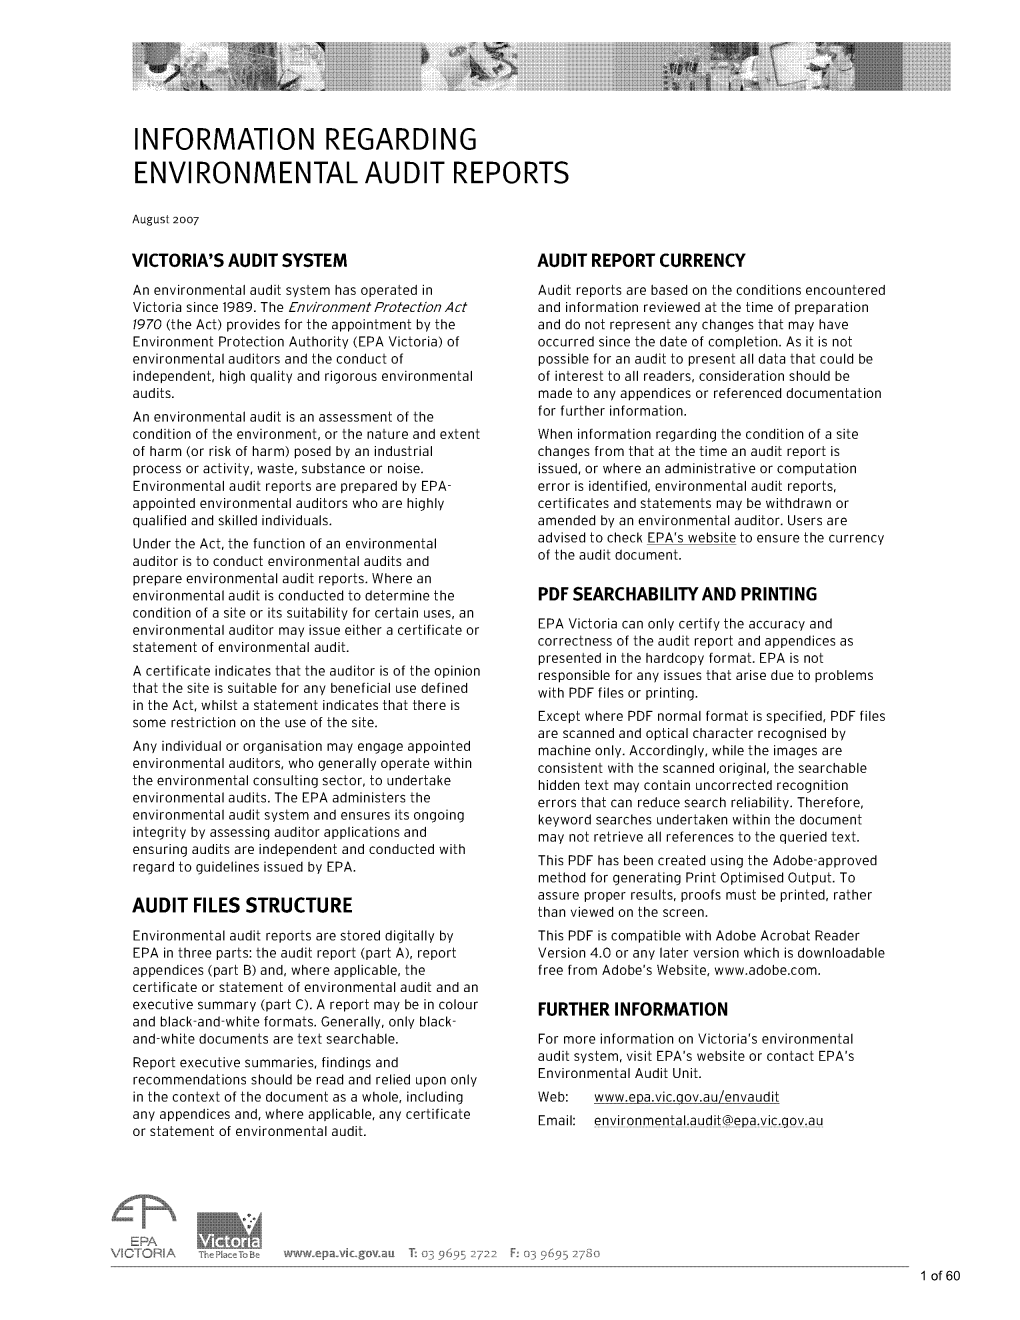 Information Regarding Environmental Audit Reports